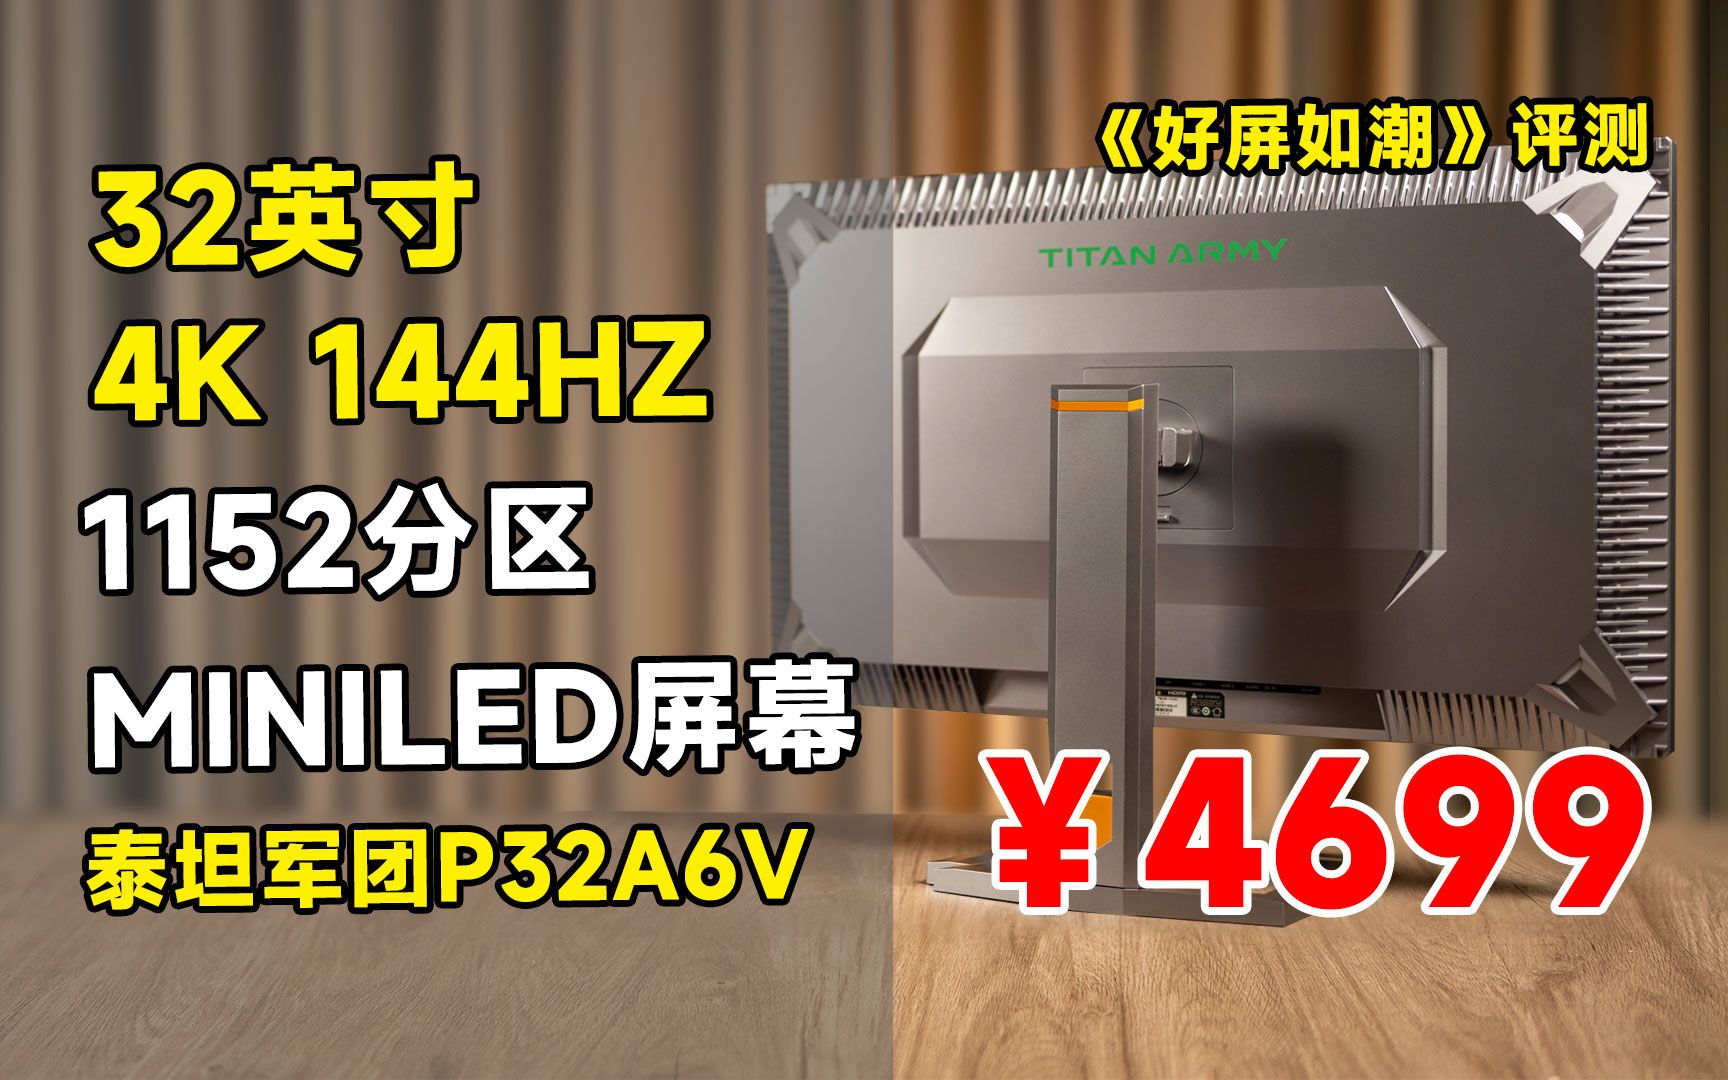 别在愁了！4699元泰坦军团P32A6V 32英寸 4K 144HZ MINLED电竞显示器 全方位评测！